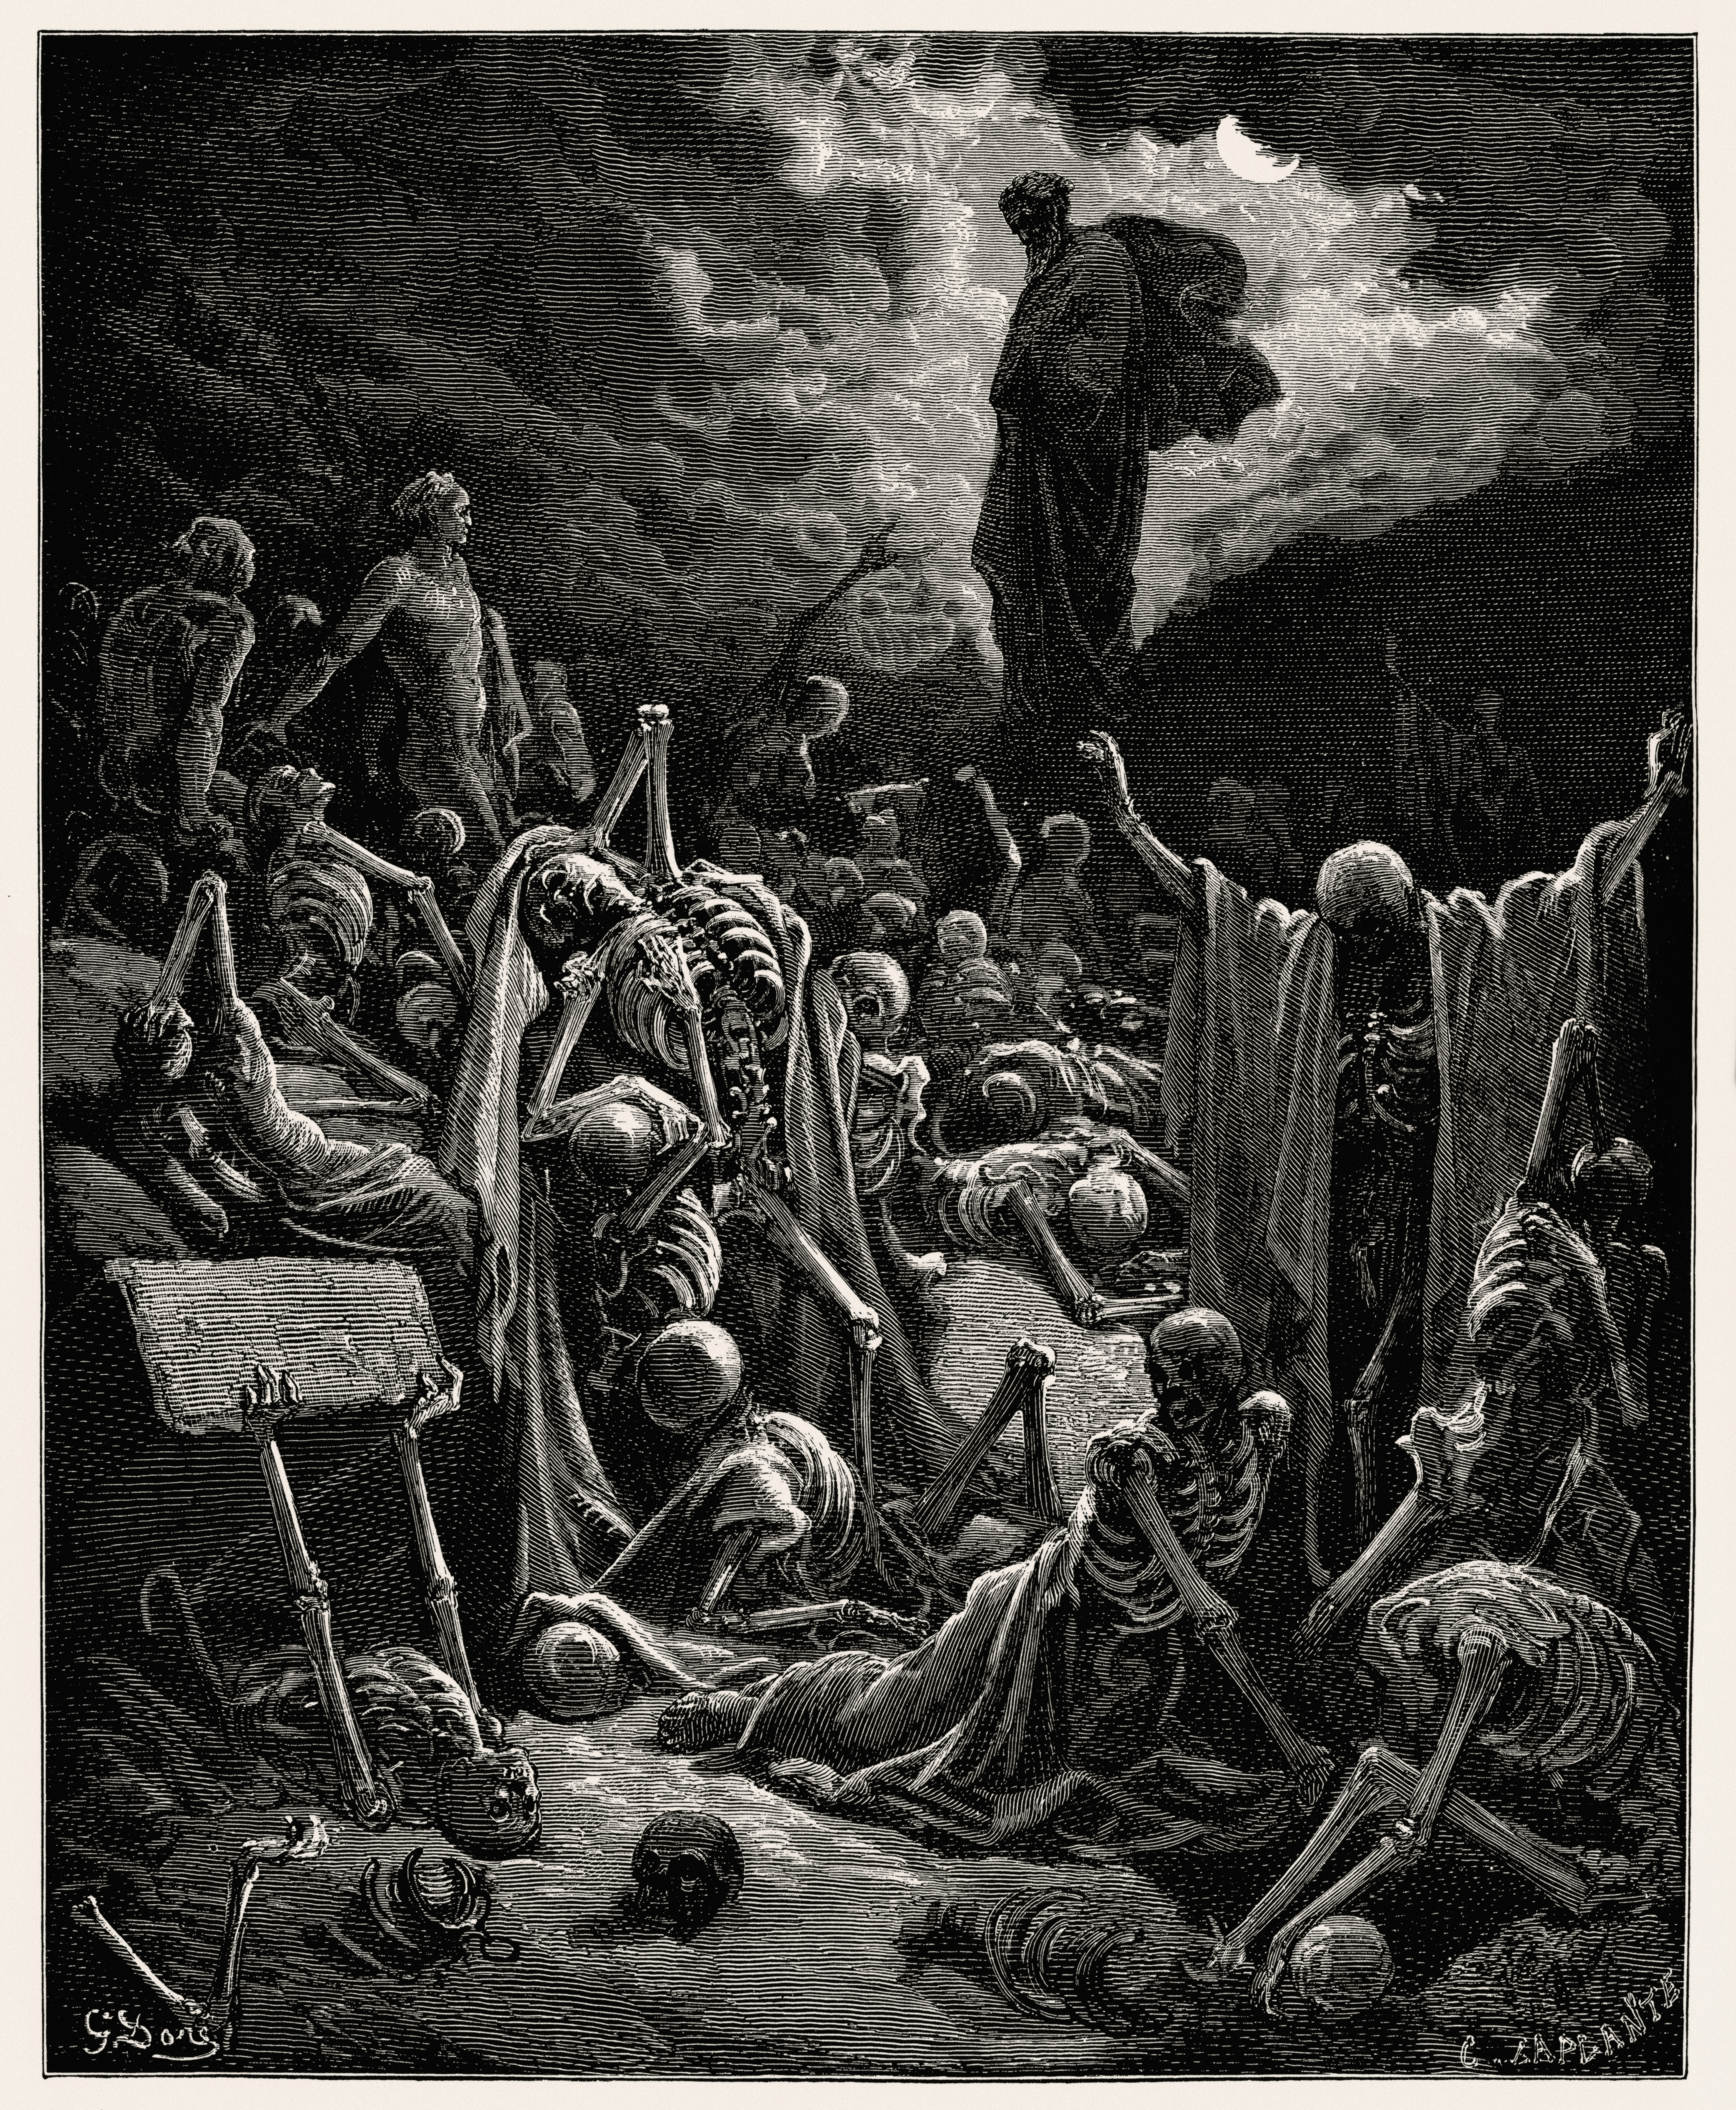 Die Vision vom Tal der trockenen Knochen by Gustave Doré - 1866 - - Private Sammlung